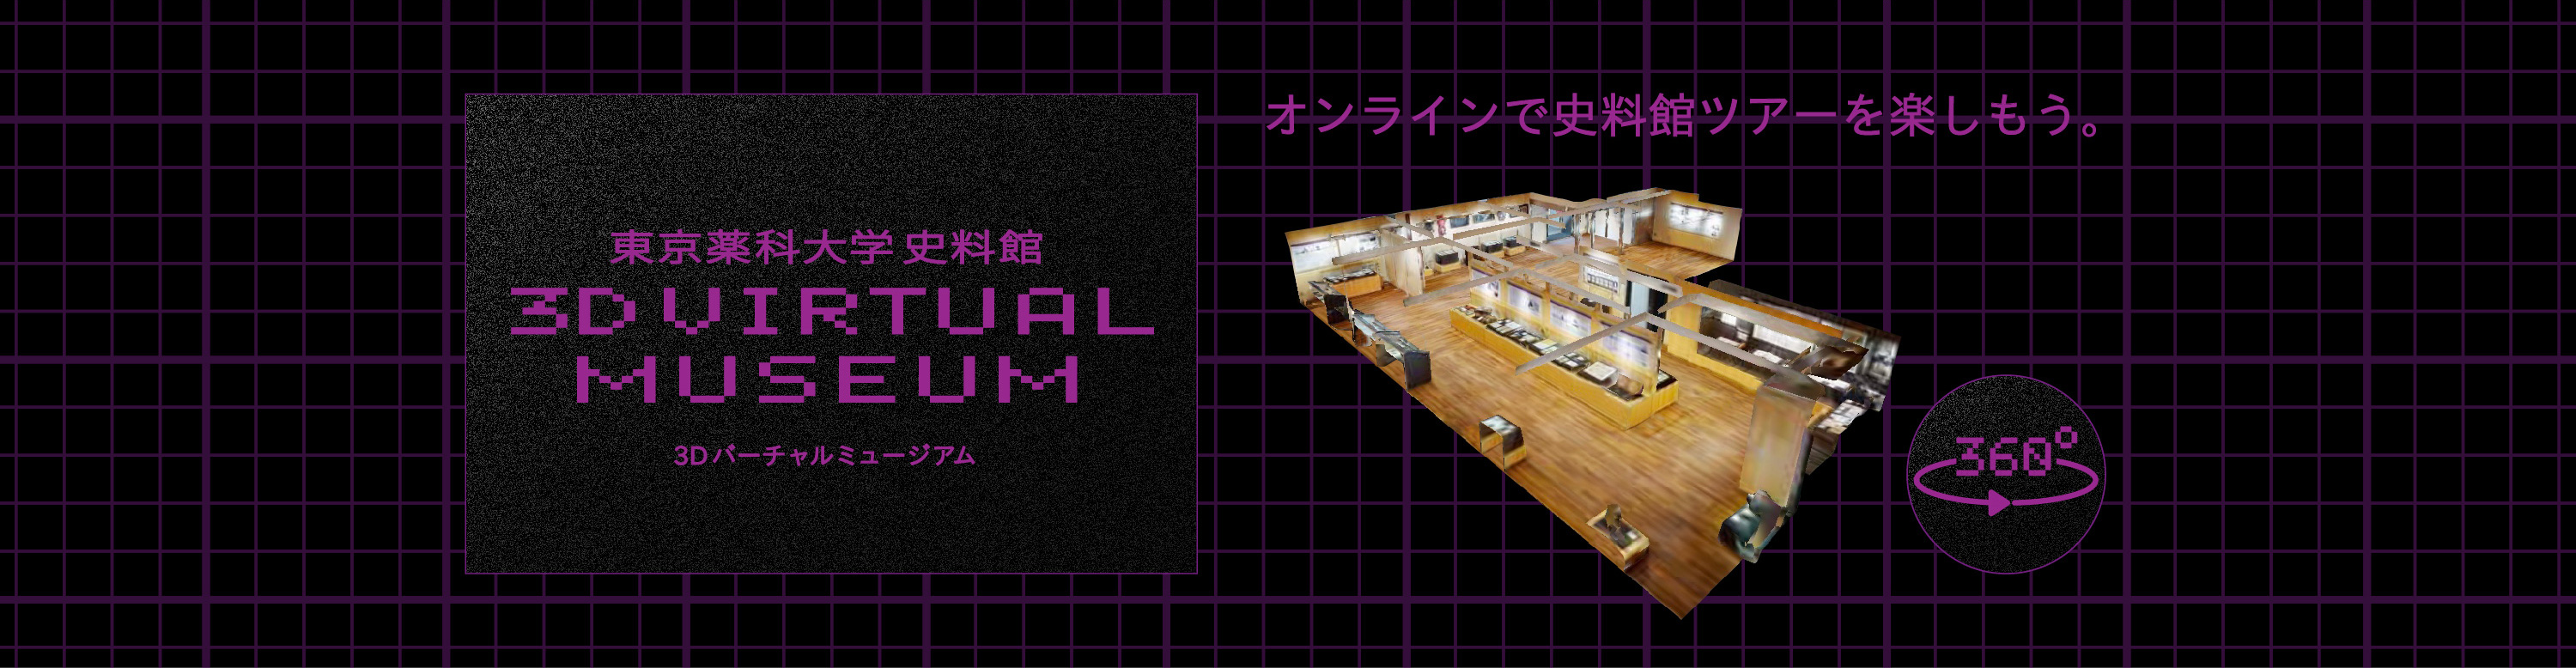 東京薬科大学史料館 3Dバーチャルミュージアム オンラインで史料館ツアーを楽しもう。